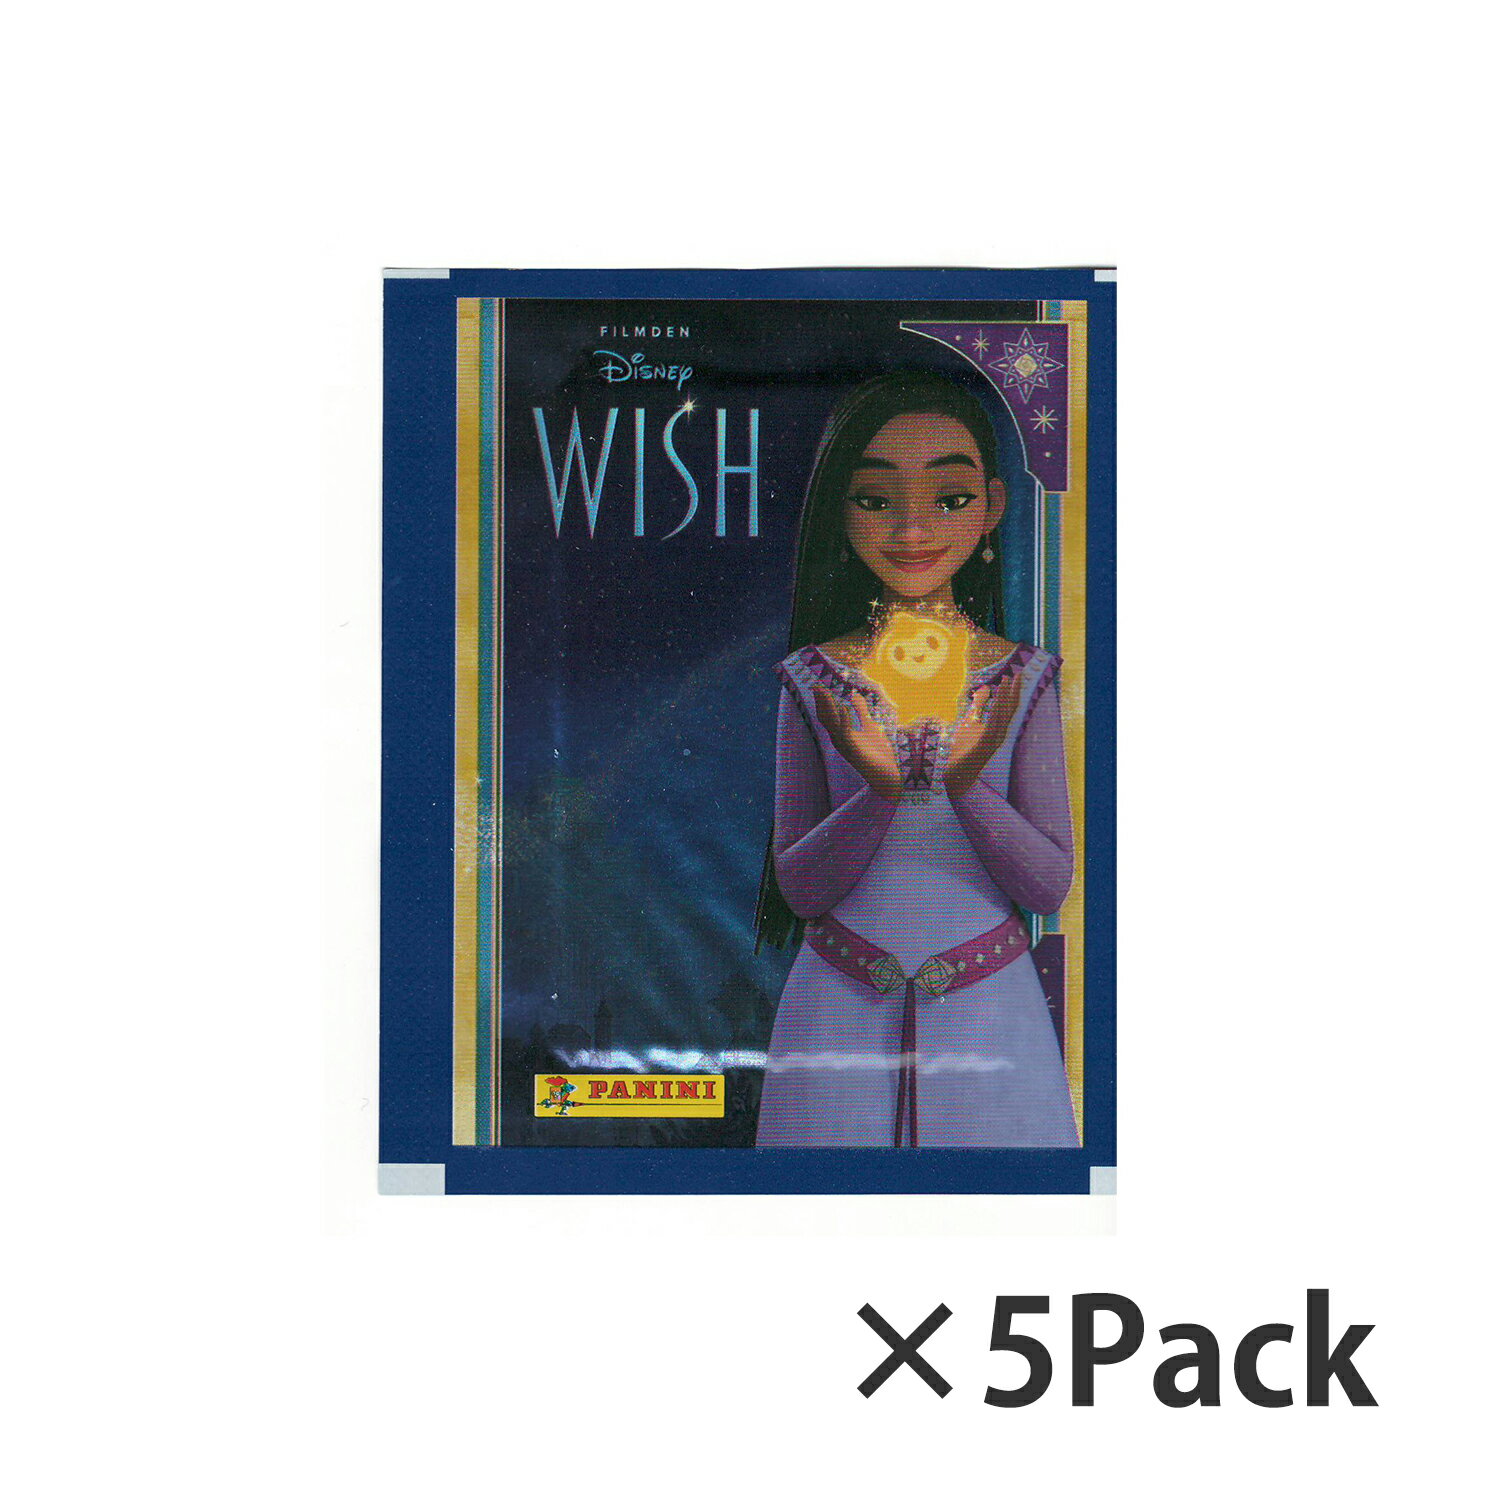 ステッカーのサイズは7.6×5.5cm。 1パックにはランダムに封入されております。 Panini Disney Movie WISH Sticker card ご注意（必ずお読みください） ご注文後、3から7営業日後（土日祝日を除く）の発送予定となっております。配達指定をご希望のお客様は余裕をもってご注文下さいませ。Panini Disney Movie WISH Sticker card